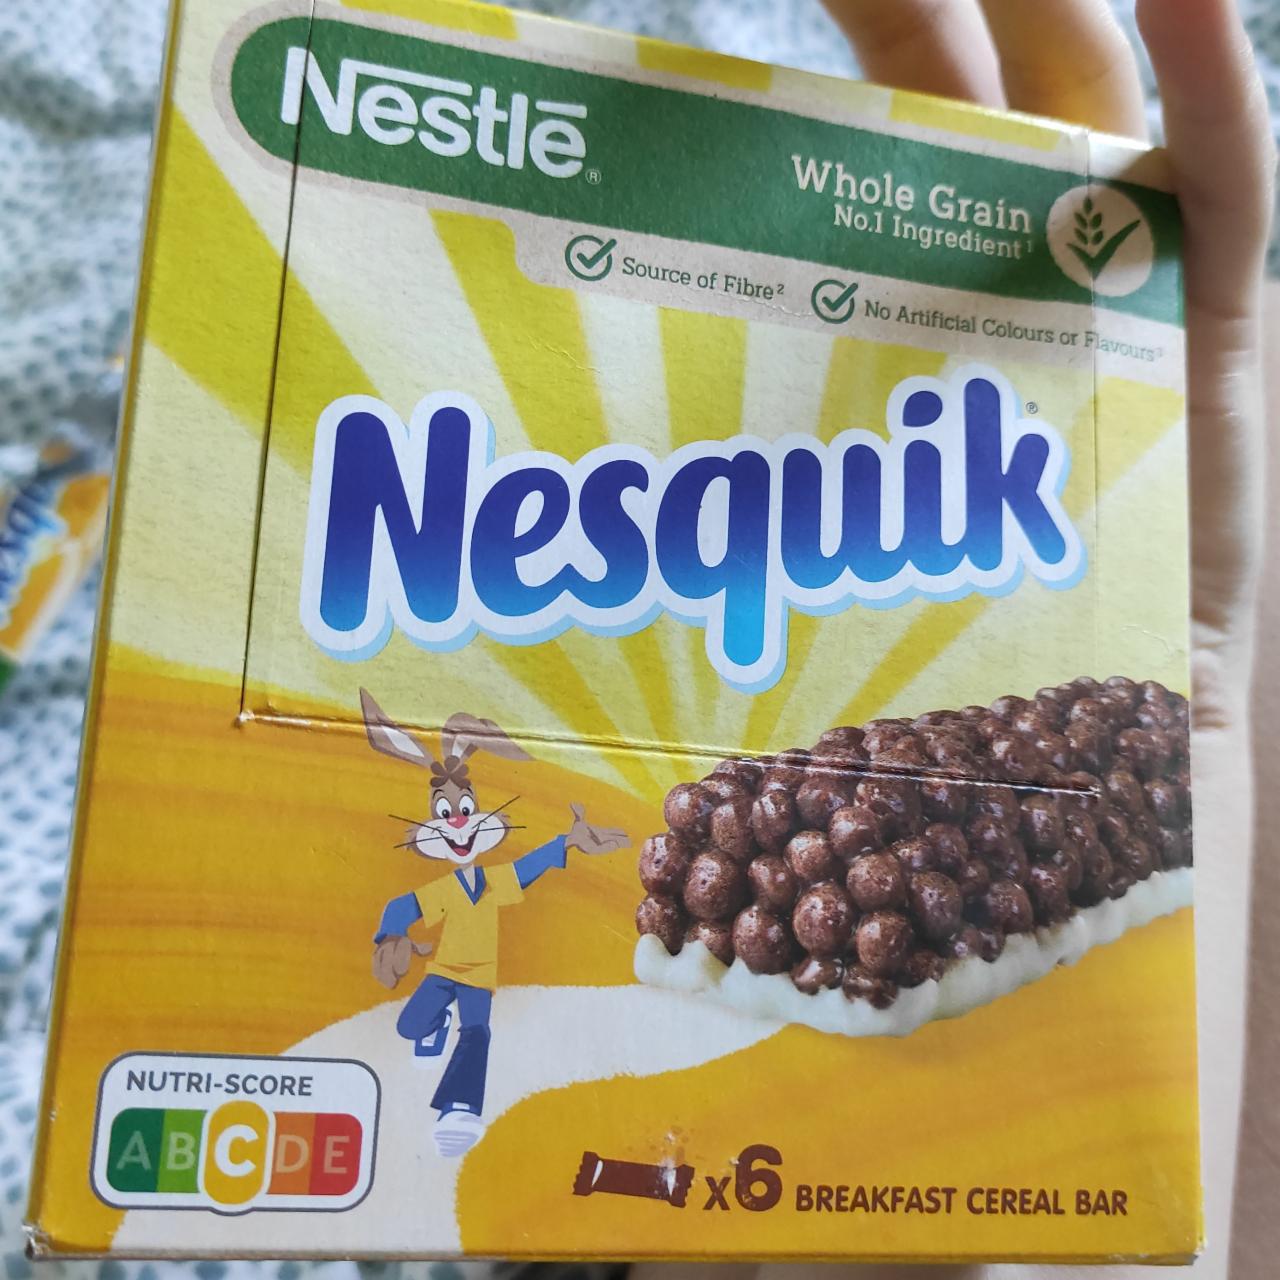 Фото - батончик цельноезрновой завтрак с молочной основой несквик Nestlé